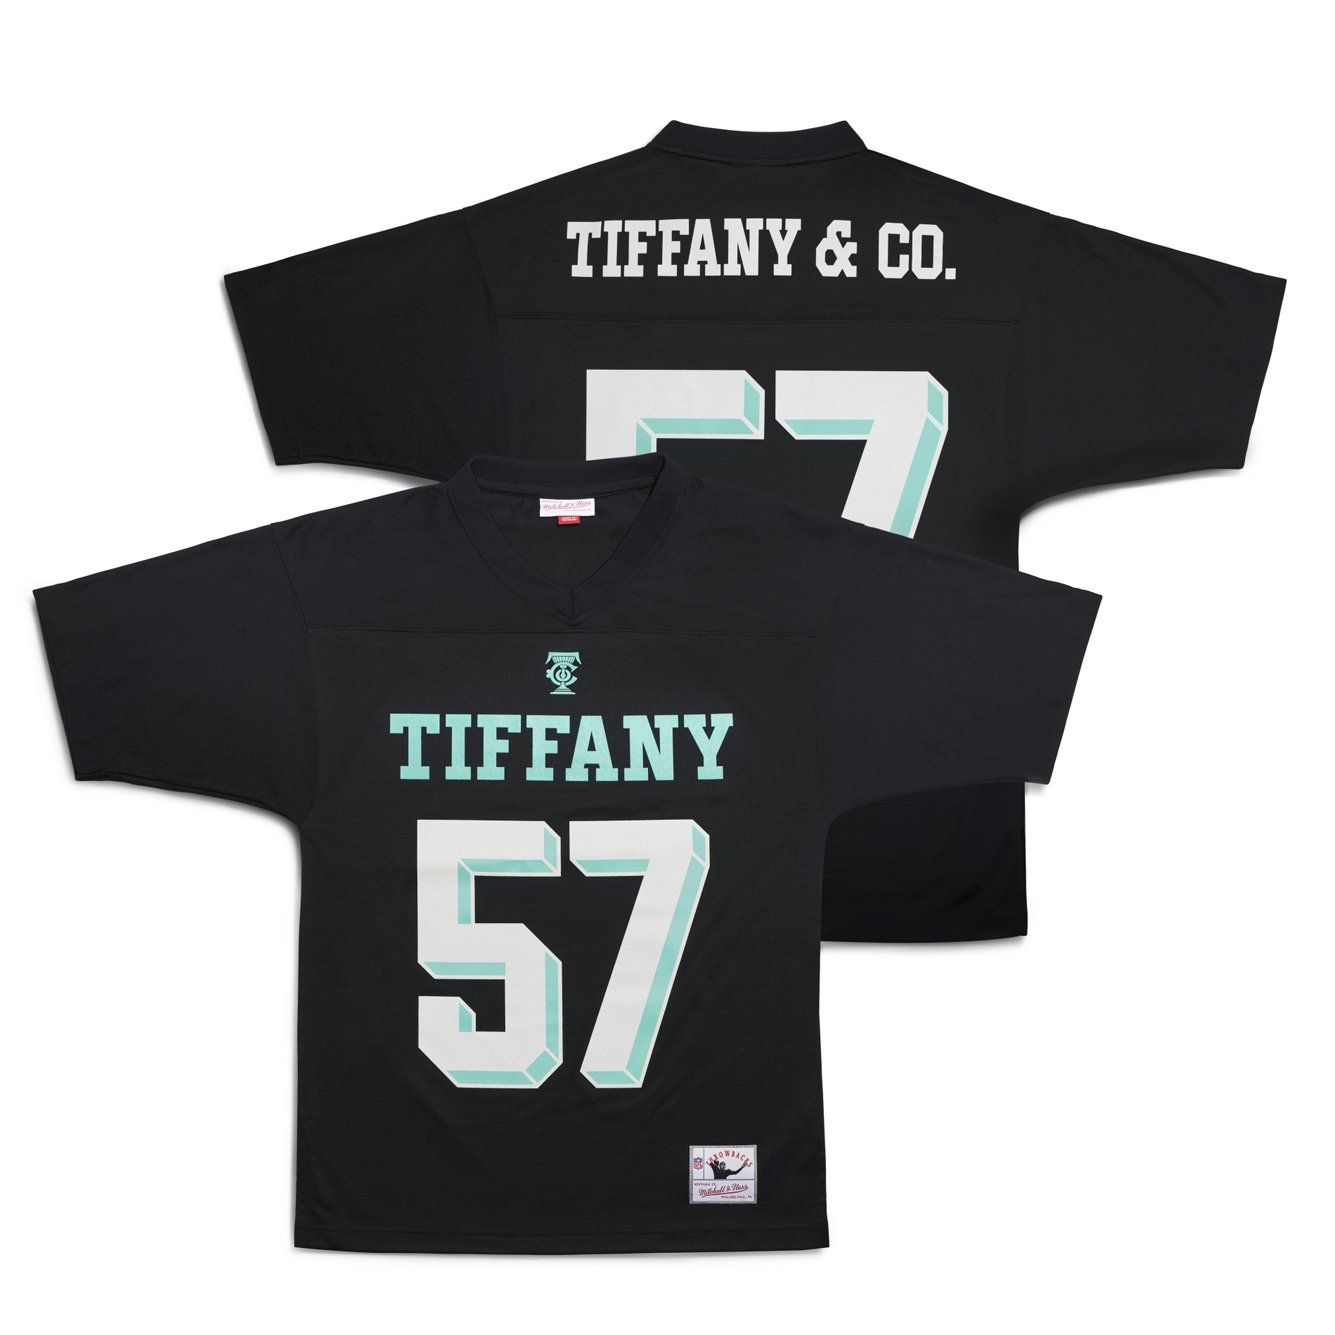 Tiffany & Co. Jersey